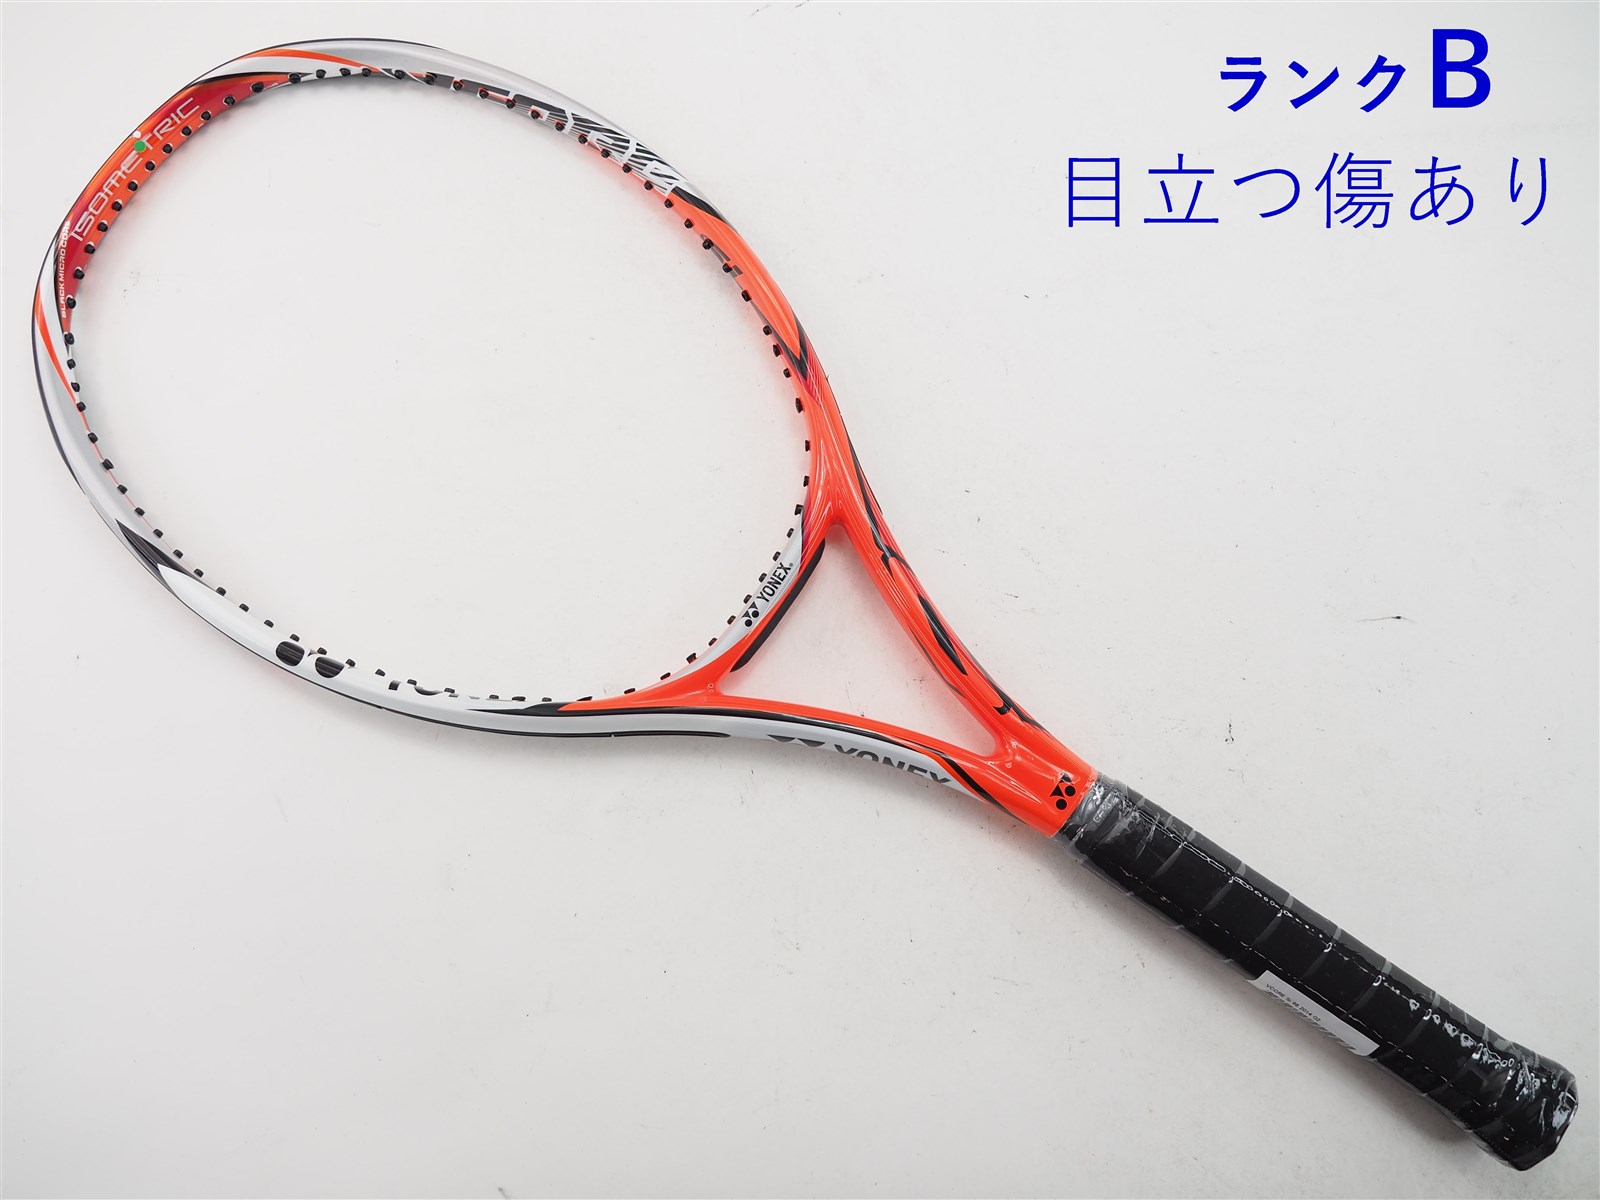 テニスラケット YONEX ヨネックス e-zone100 g2 - テニス